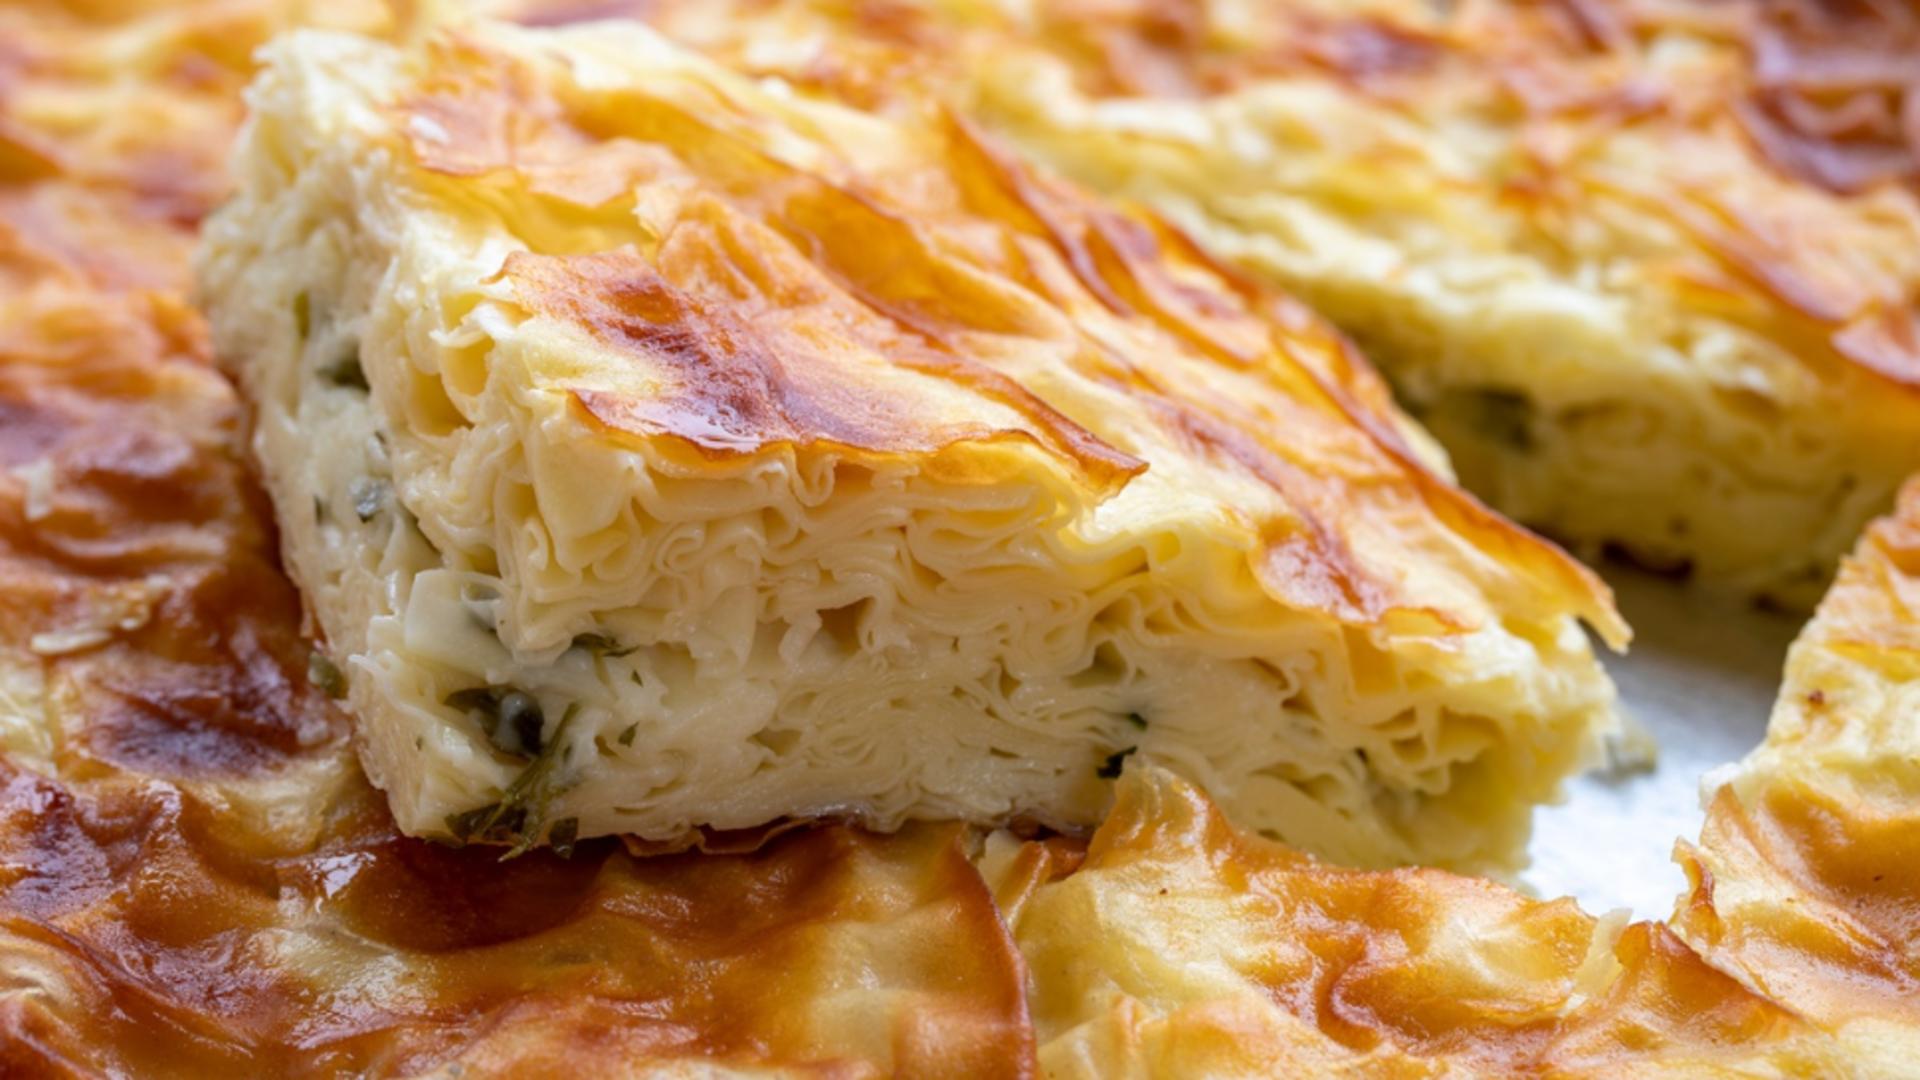 Plăcintă creață cu brânză sărată. Rețetă turcească denumită Borek